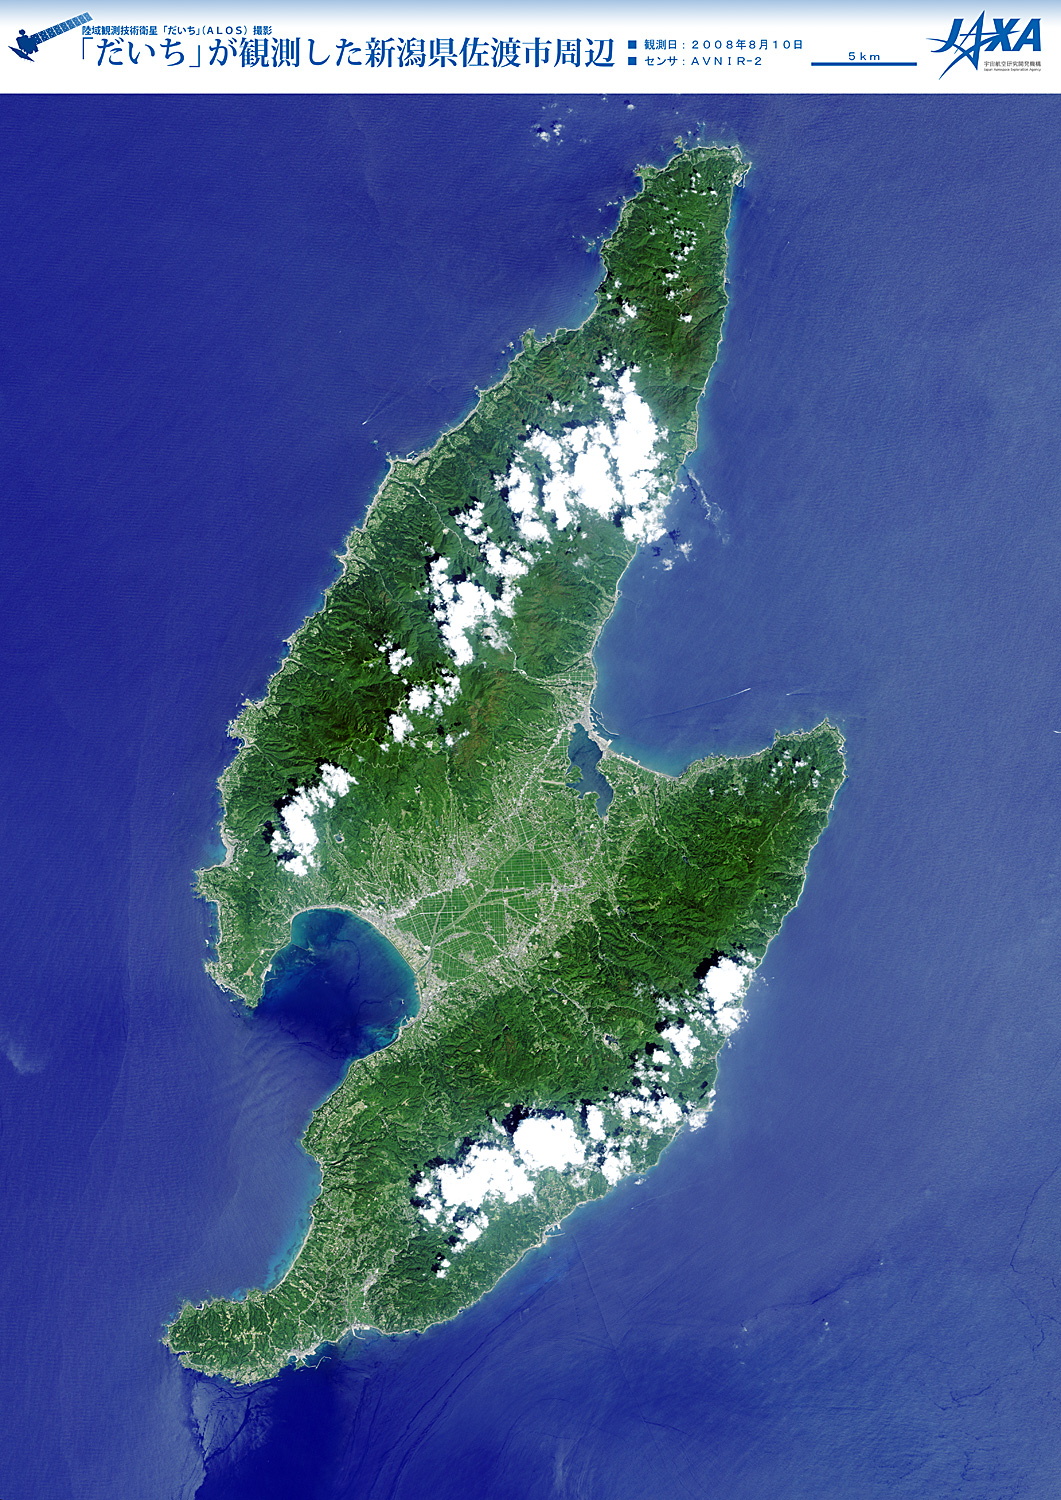 だいちから見た日本の都市 佐渡島:衛星画像（ポスター仕上げ）